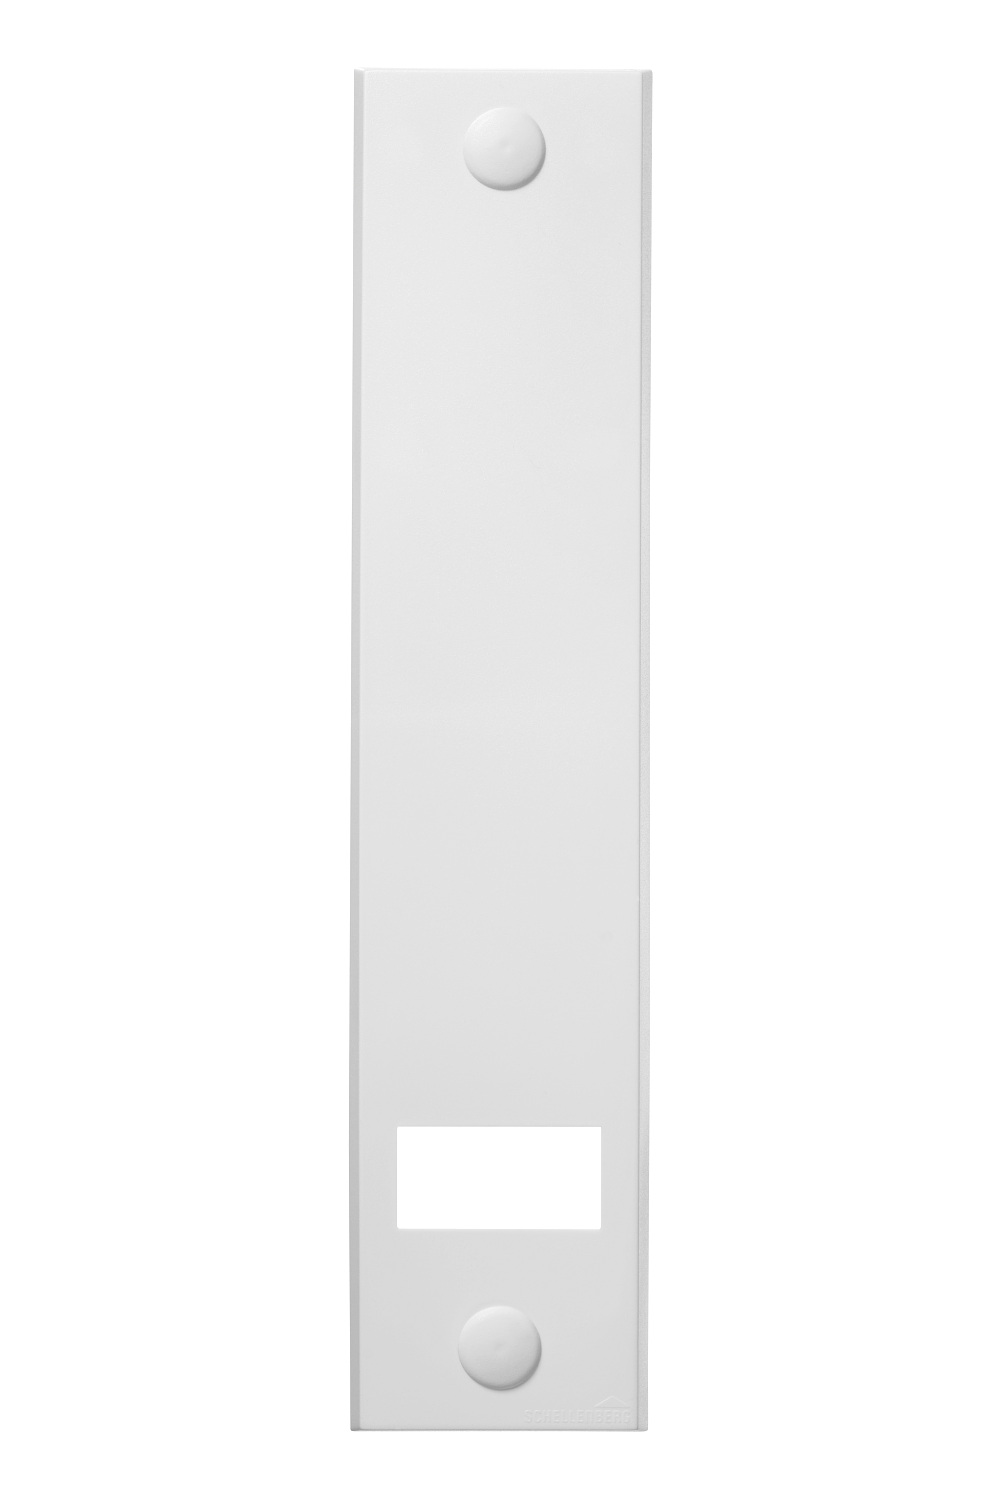 Schellenberg® Gurtwickler-Abdeckplatte STANDARD, 215 mm Lochabstand, Weiß